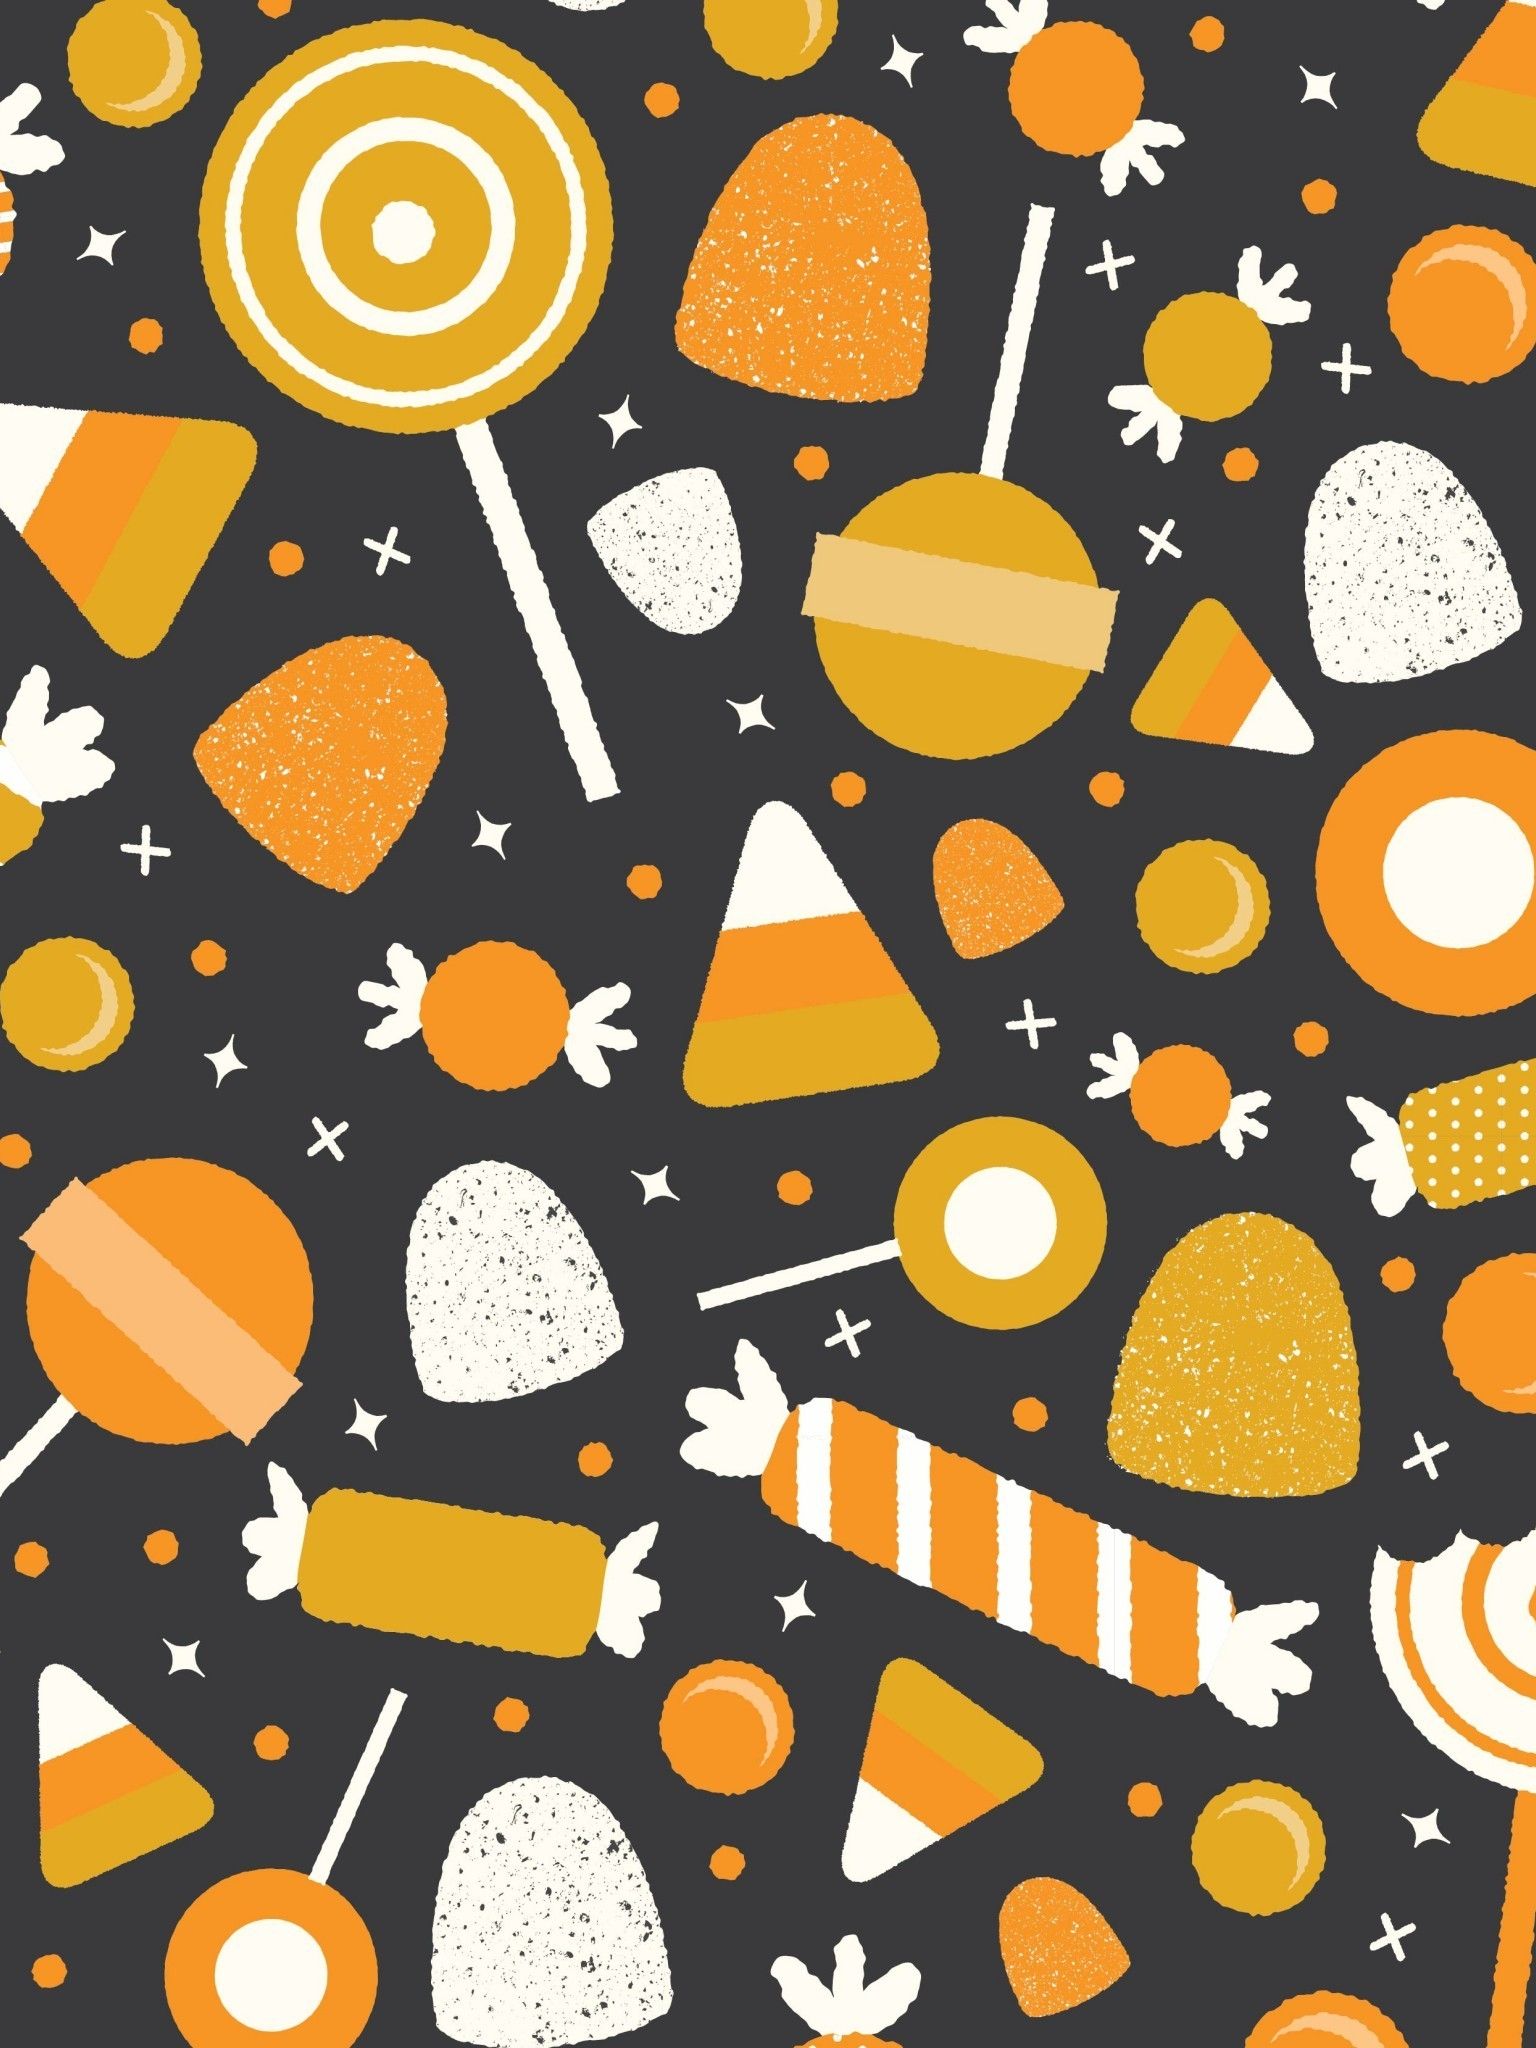 Free download Kawaii Halloween Wallpaper - [2048x2048] for your Desktop, Mobile & Tablet. Explore Halloween Cute Wallpaper. Cute Halloween Background, Halloween Cute Wallpaper, Cute Halloween Wallpaper